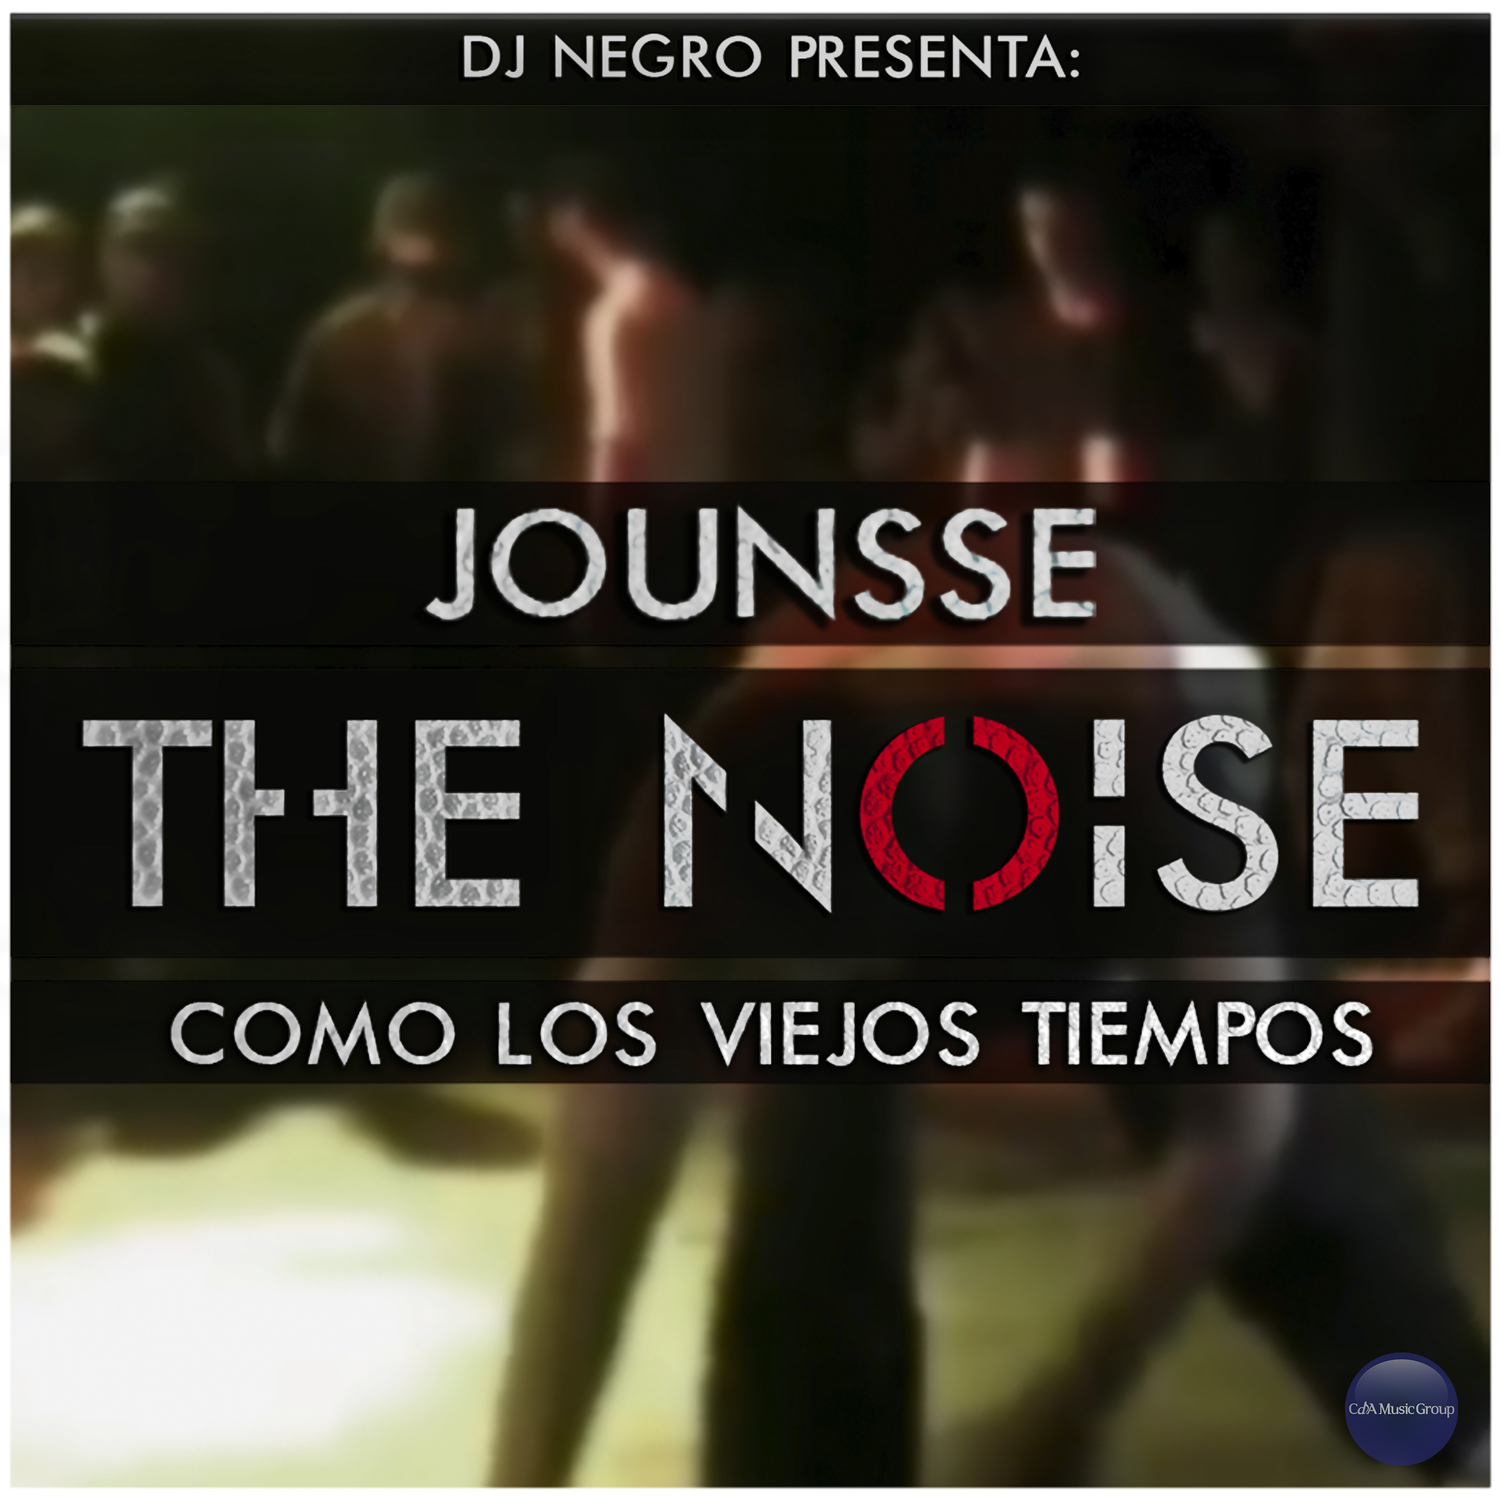 DJ Negro Presenta "Como los Viejos Tiempos" (Feat. Jounsse)